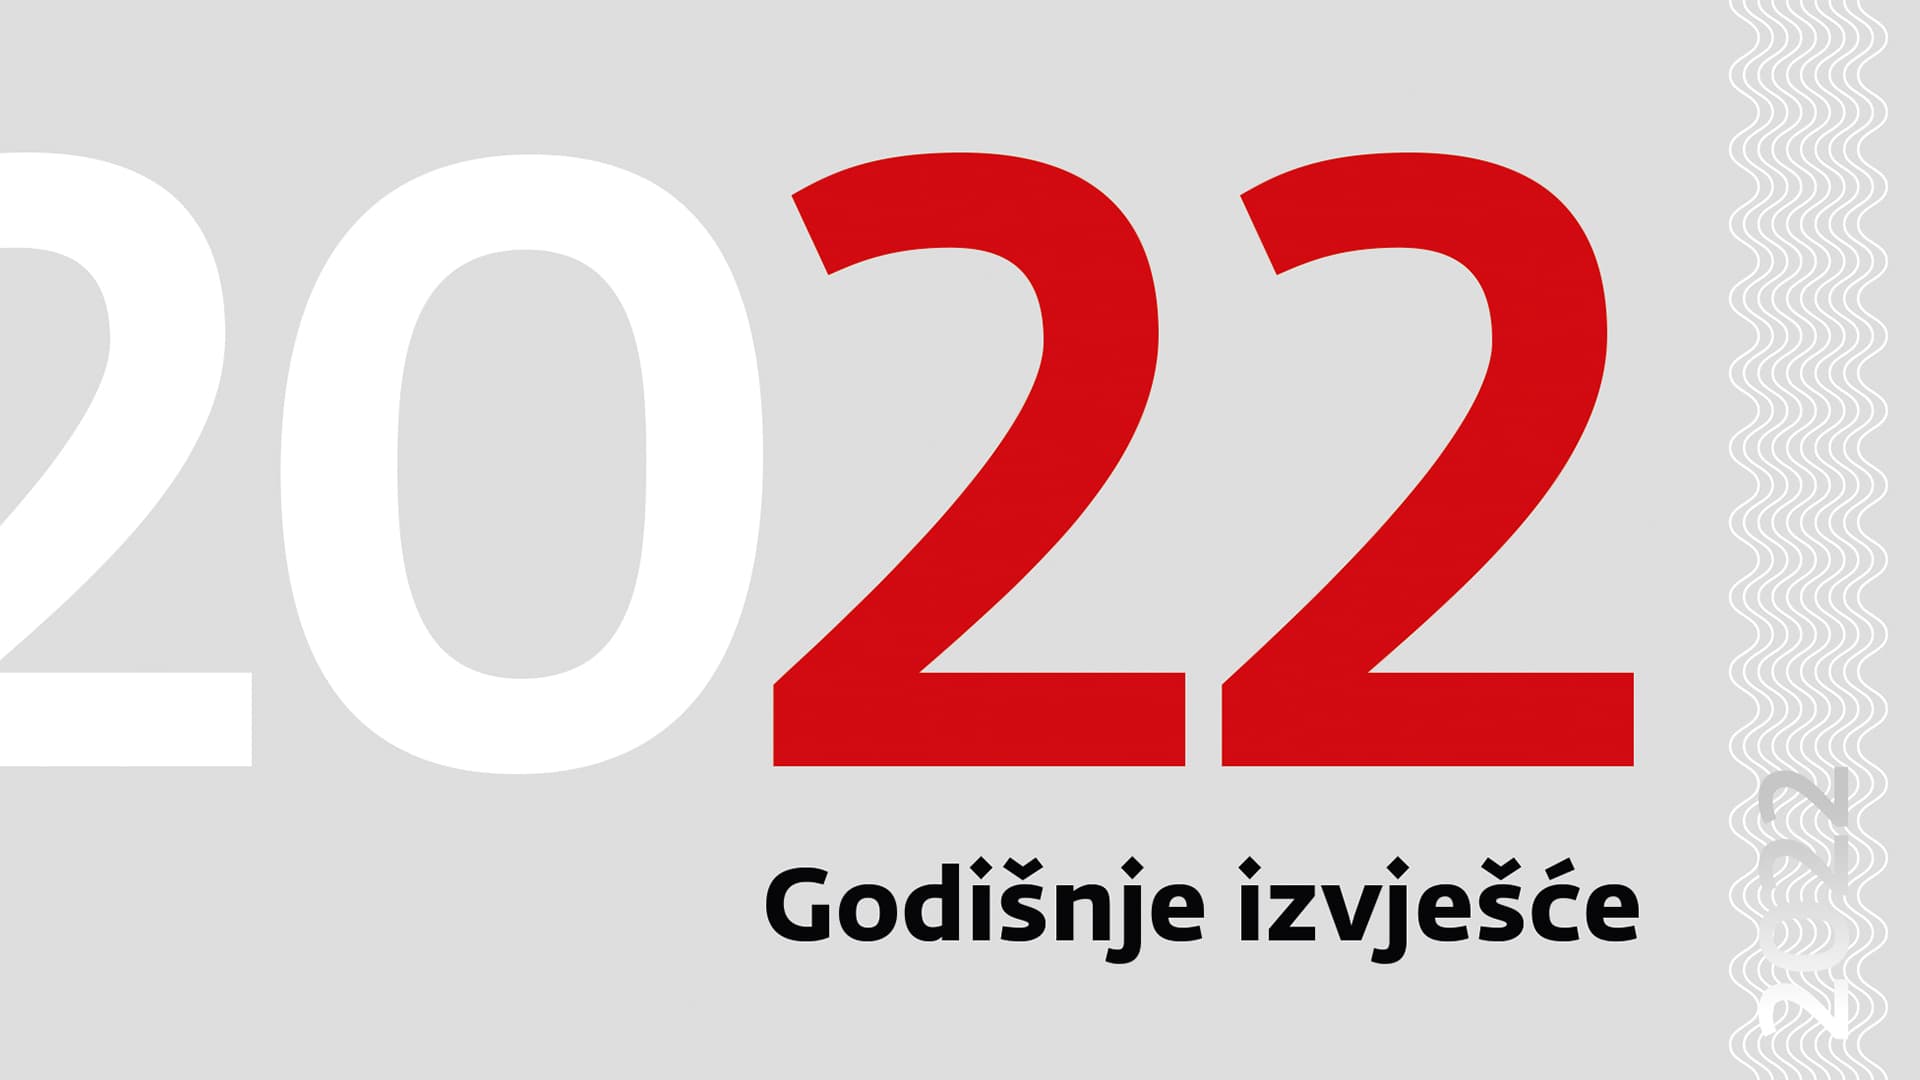 Godišnje izvješće Hrvatske narodne banke za 2022.